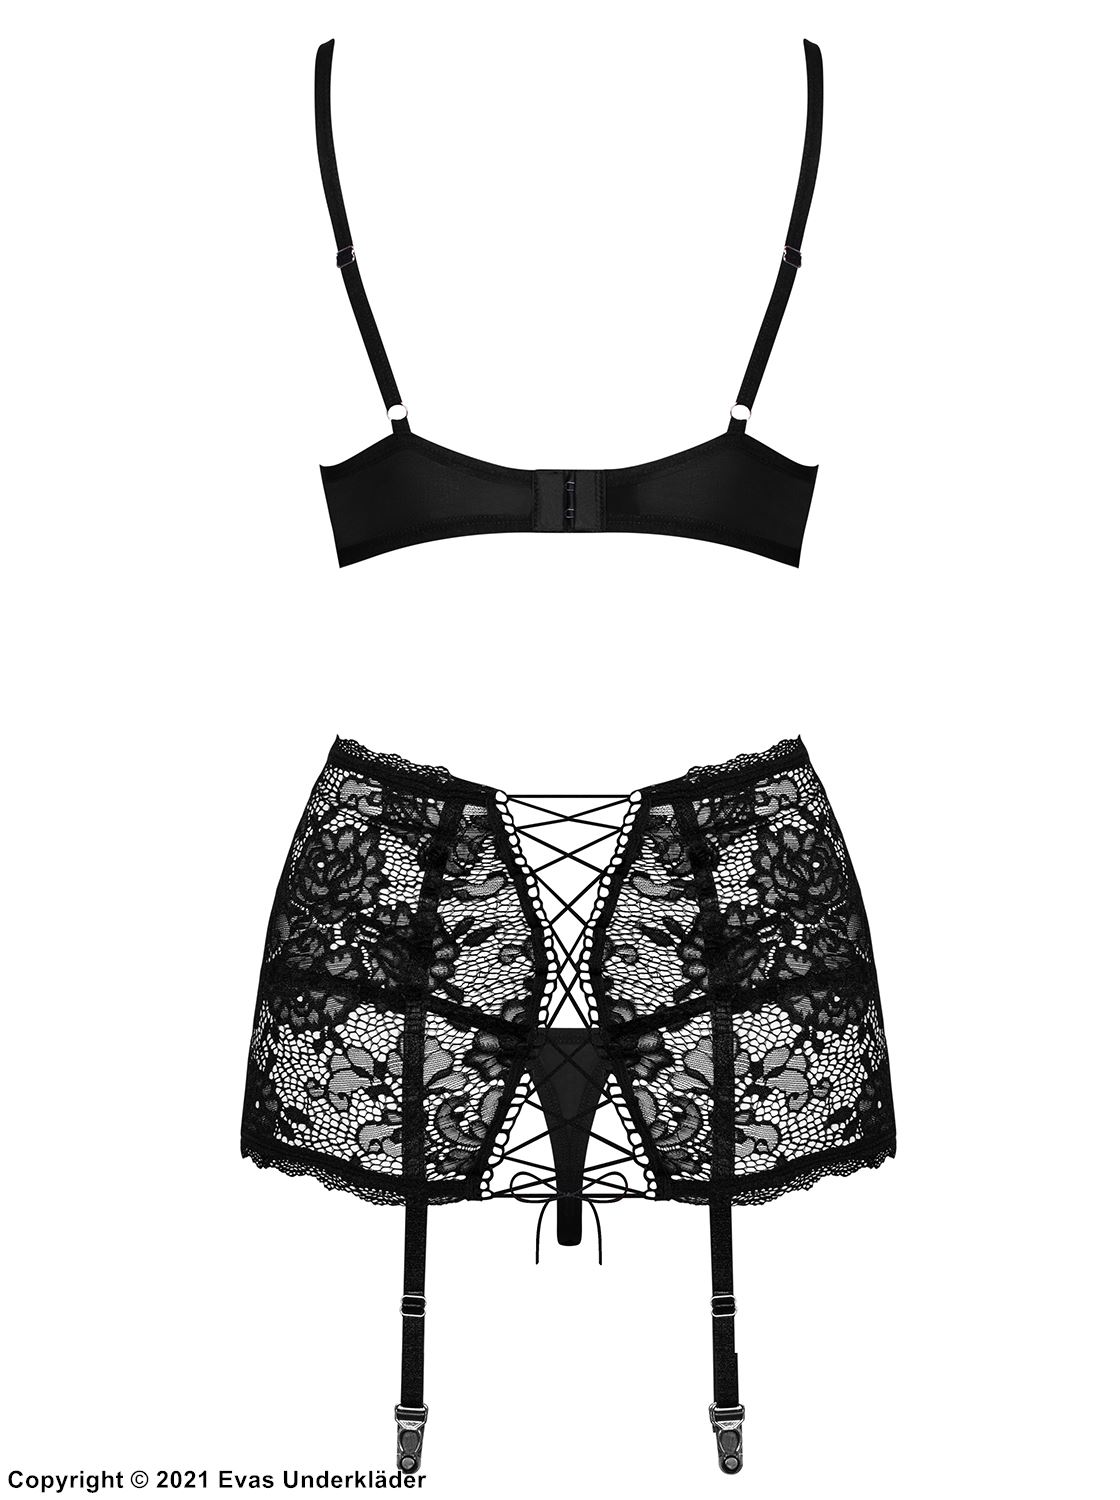 Romantic lingerie set, lace cups, built-in garter belt strap, flowers